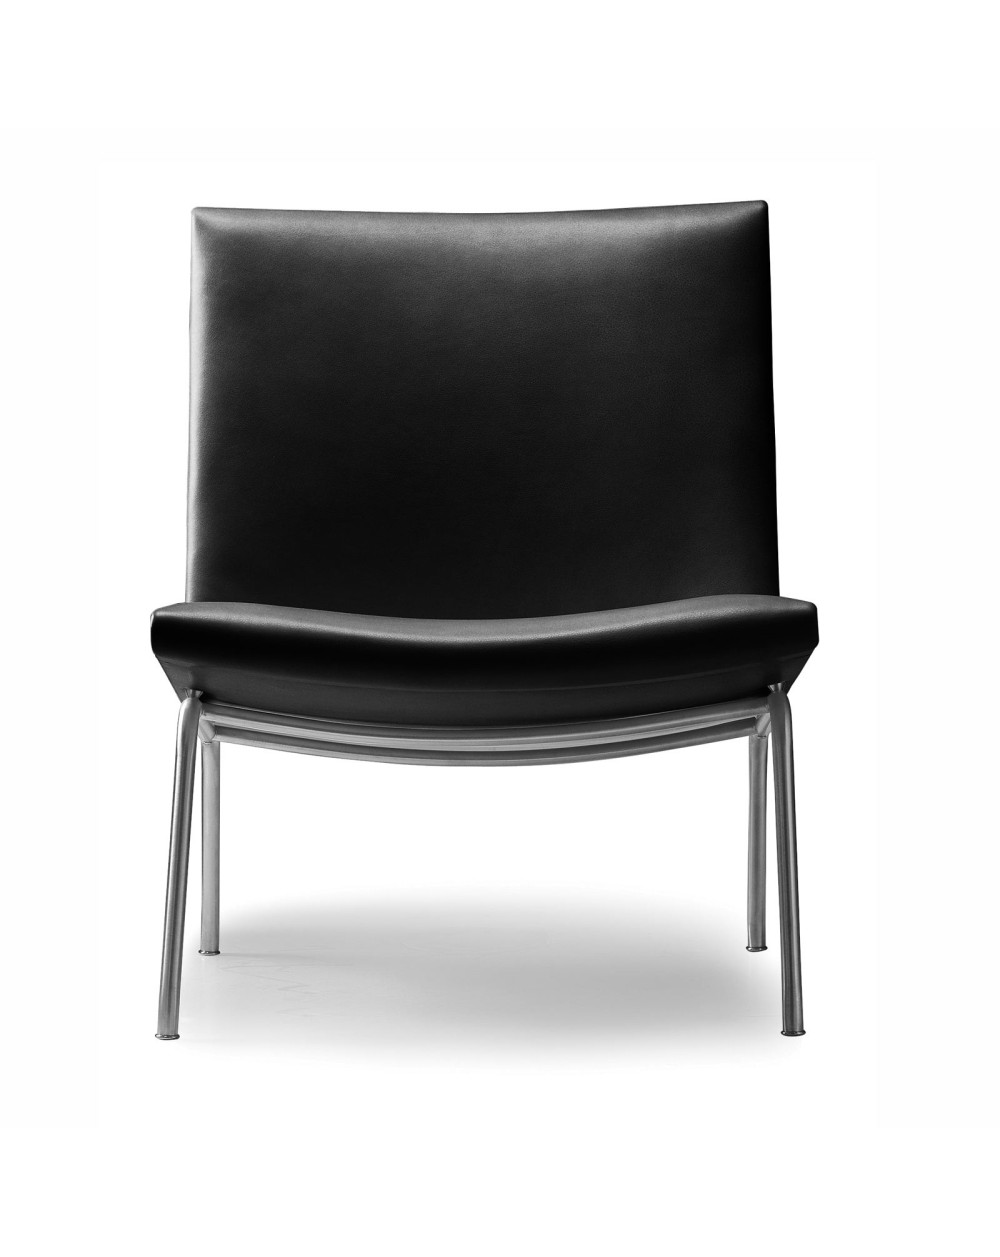 Hans Wegner Chair Ch401 Of Carl Hansen, Scandinavian Furniture Leather Chair